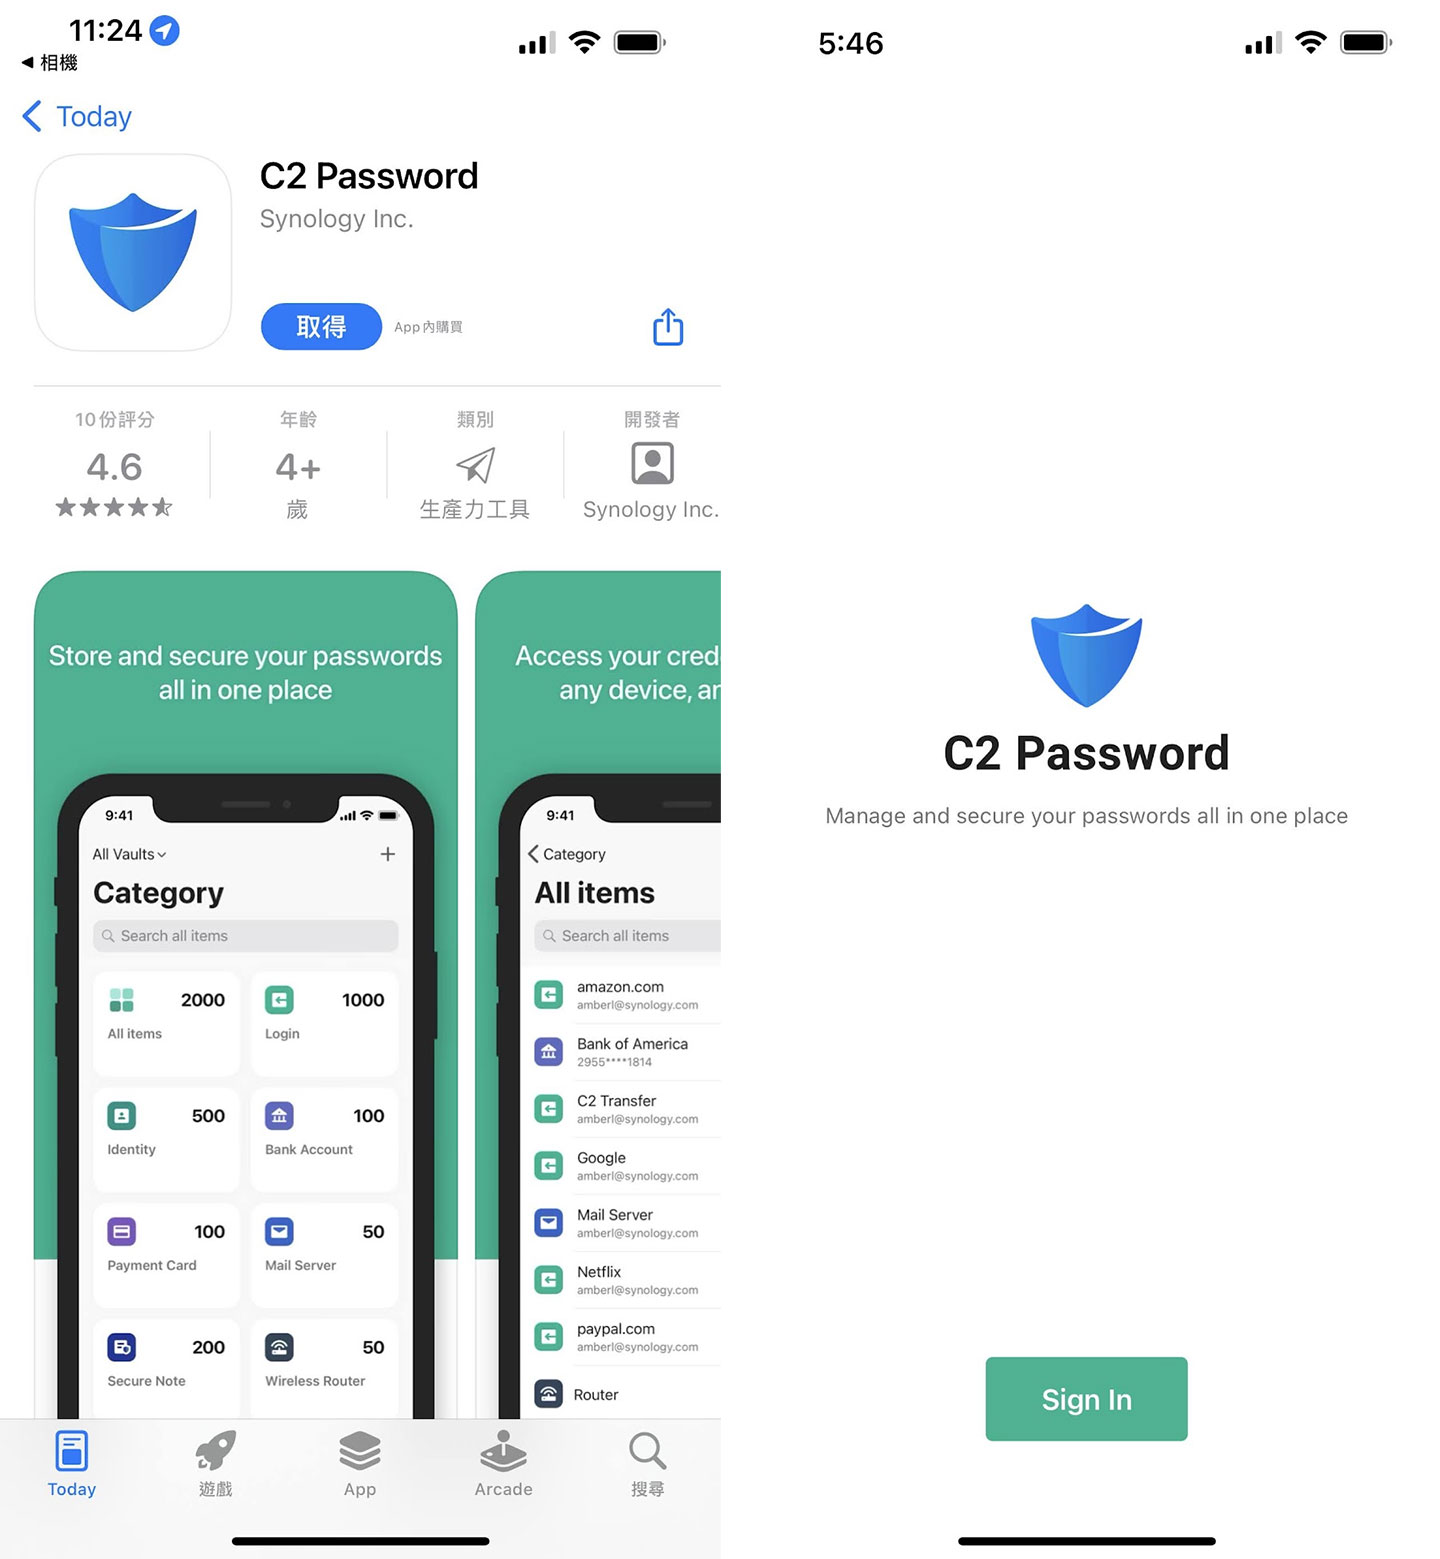 在 iOS 的 App Store 與 Android 的 Google Play 可以找到 C2 Password 的應用程式，在裝並啟動之後，同樣需要登入 Synology 帳號與 C2 Password 的密碼來取服務。